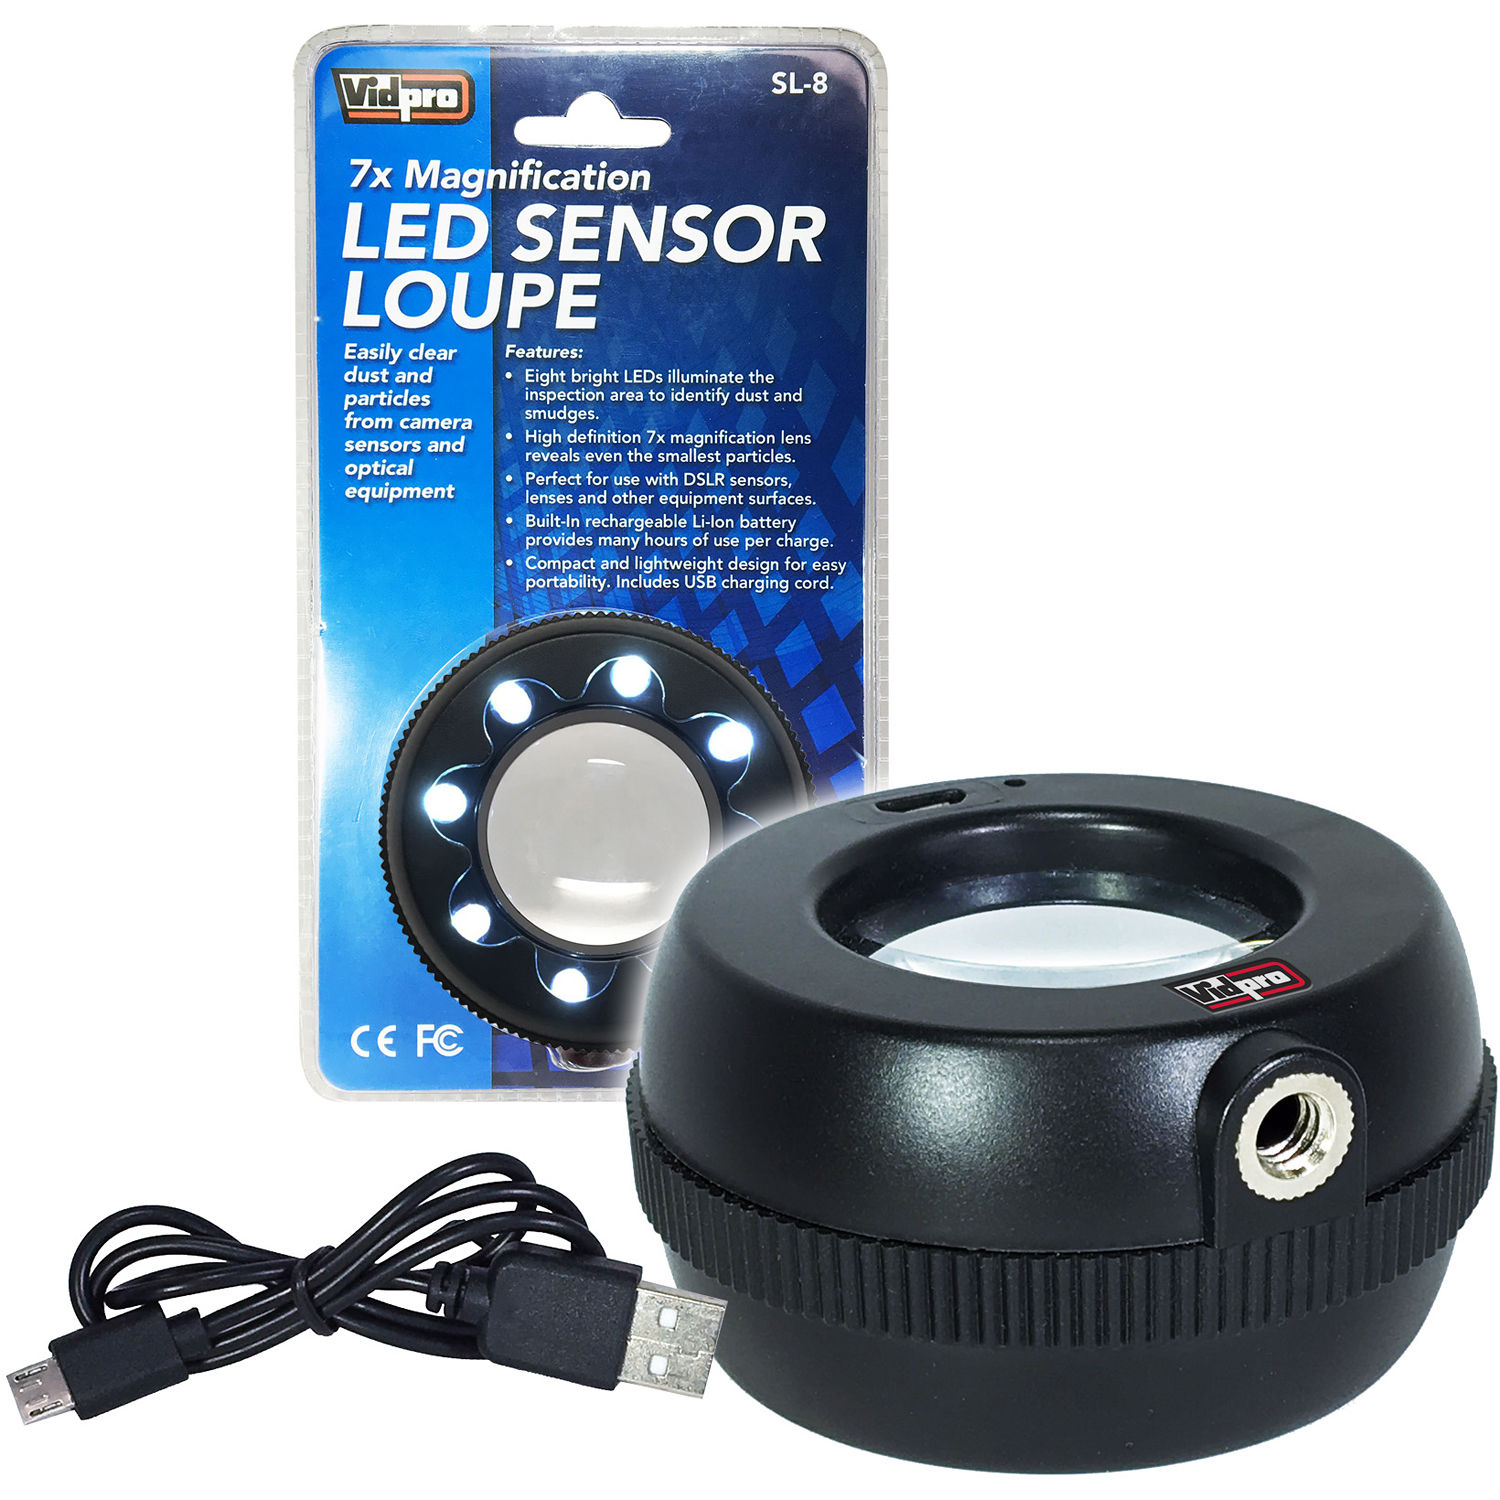 Vidpro SL-8 7x Pro Magnification LED Light Sensor Loupe